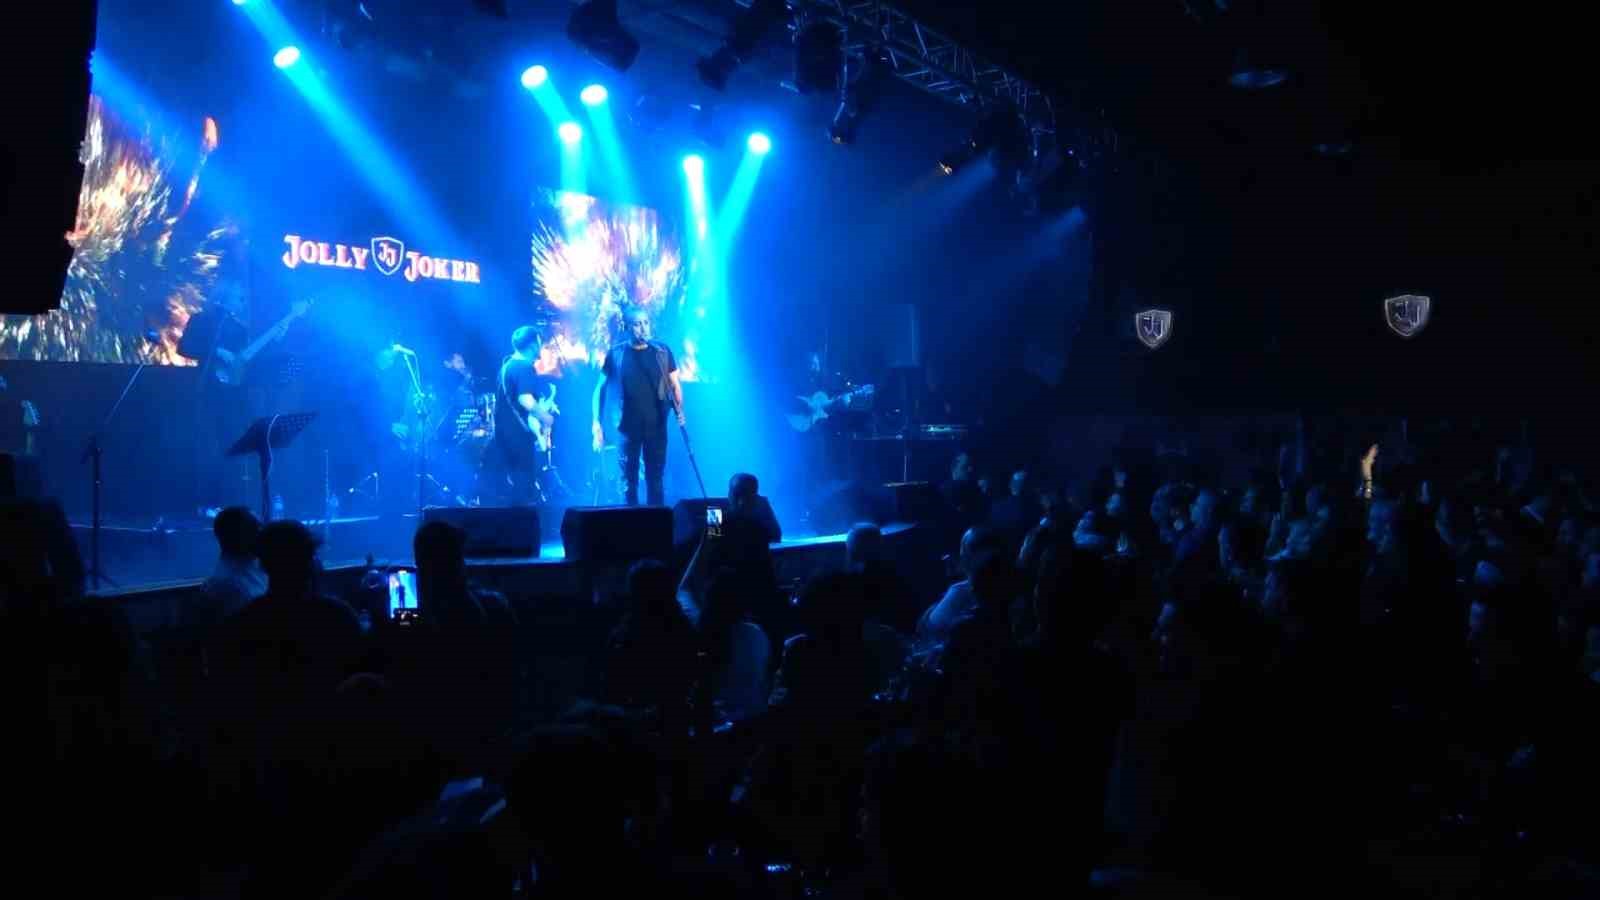 Haluk Levent şehit ailesine destek konseri verdi